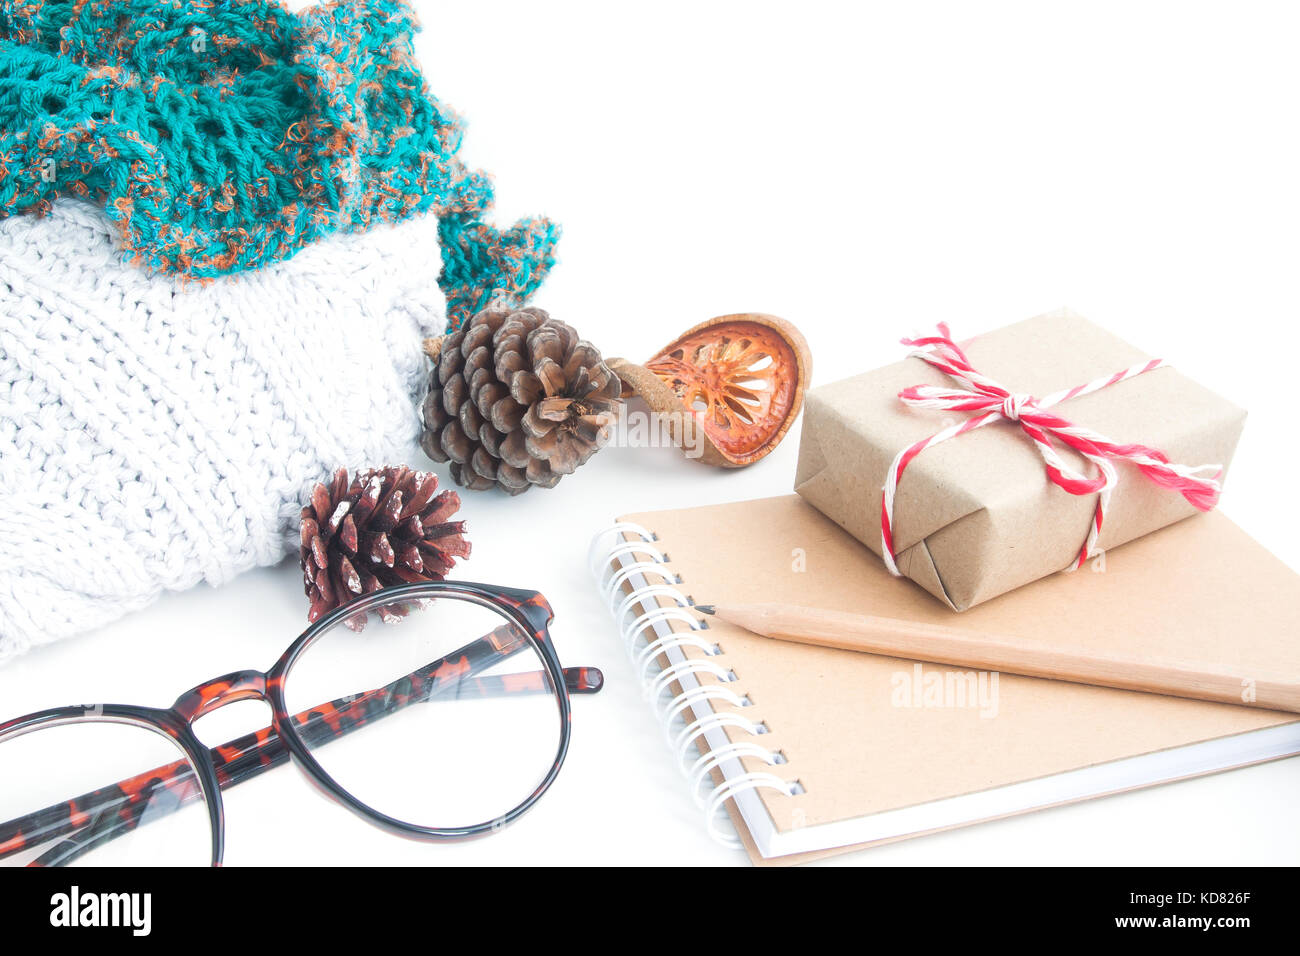 Confezione regalo e accessori invernali su sfondo bianco Foto Stock